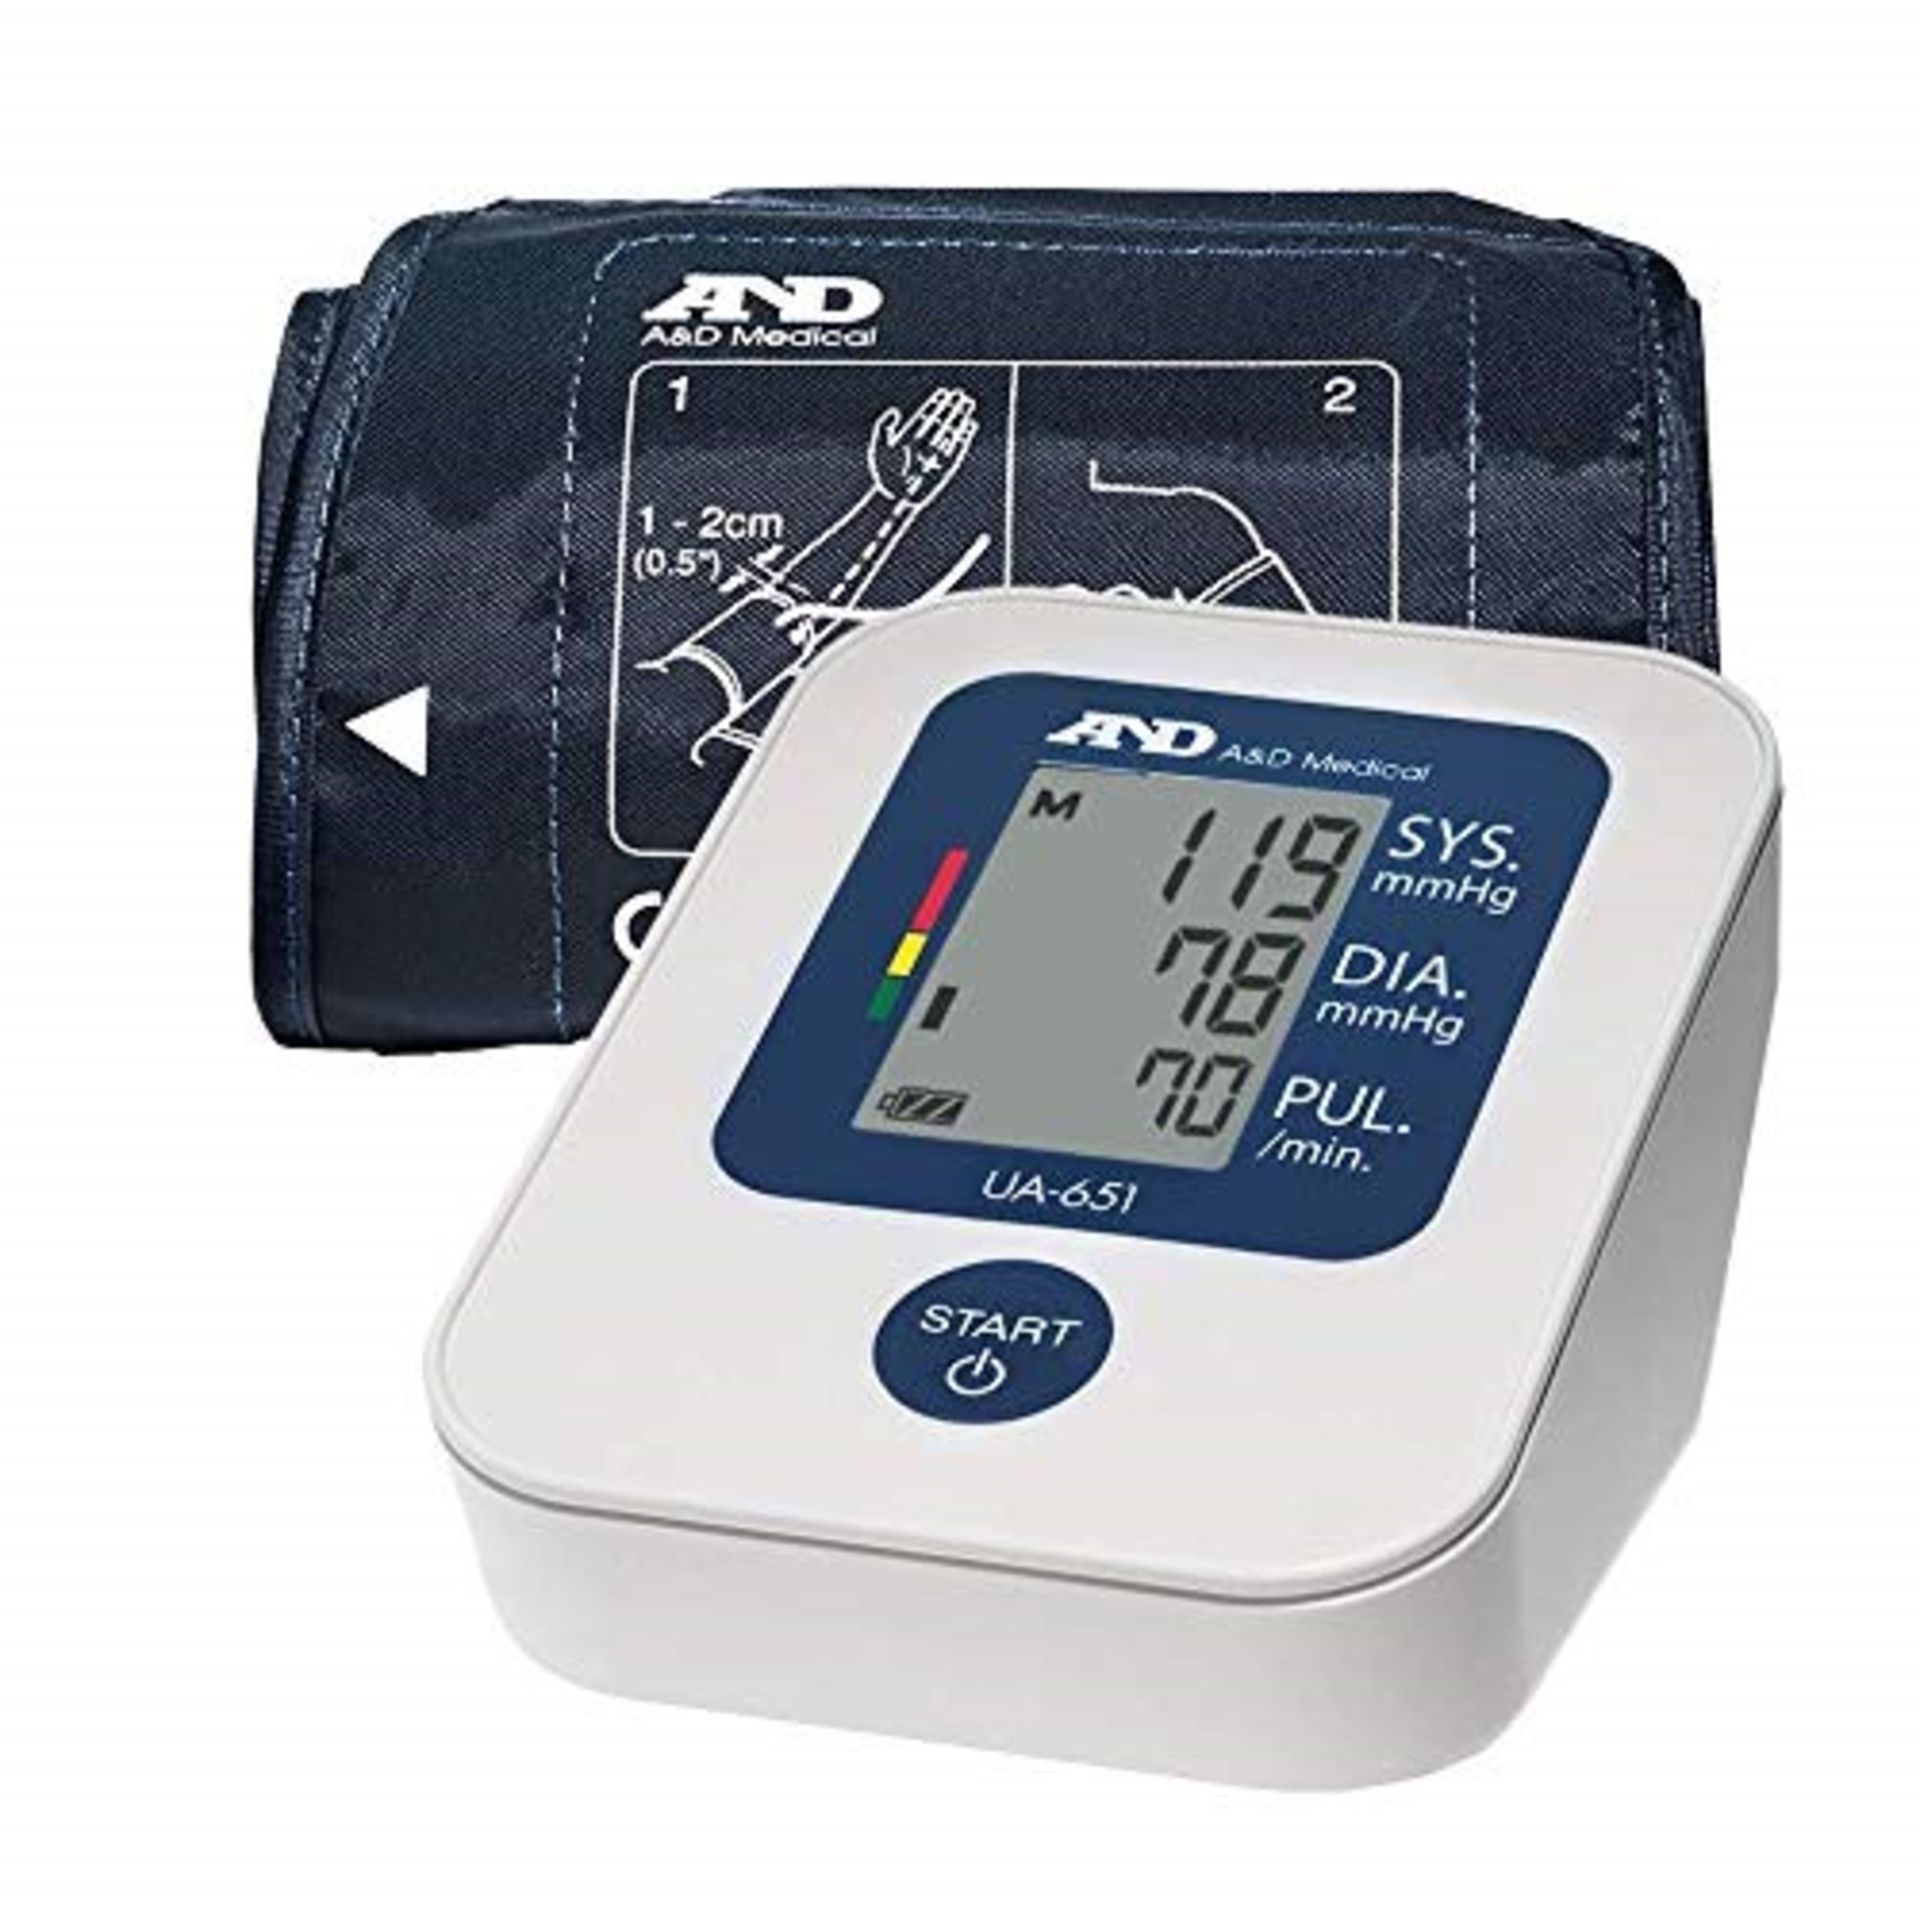 A�&�D� �M�e�d�i�c�a�l� �U�A�-�6�5�1� �U�p�p�e�r� �A�r�m� �B�l�o�o�d� �P�r�e�s�s�u�r�e� �M�o�n�i�t�o�